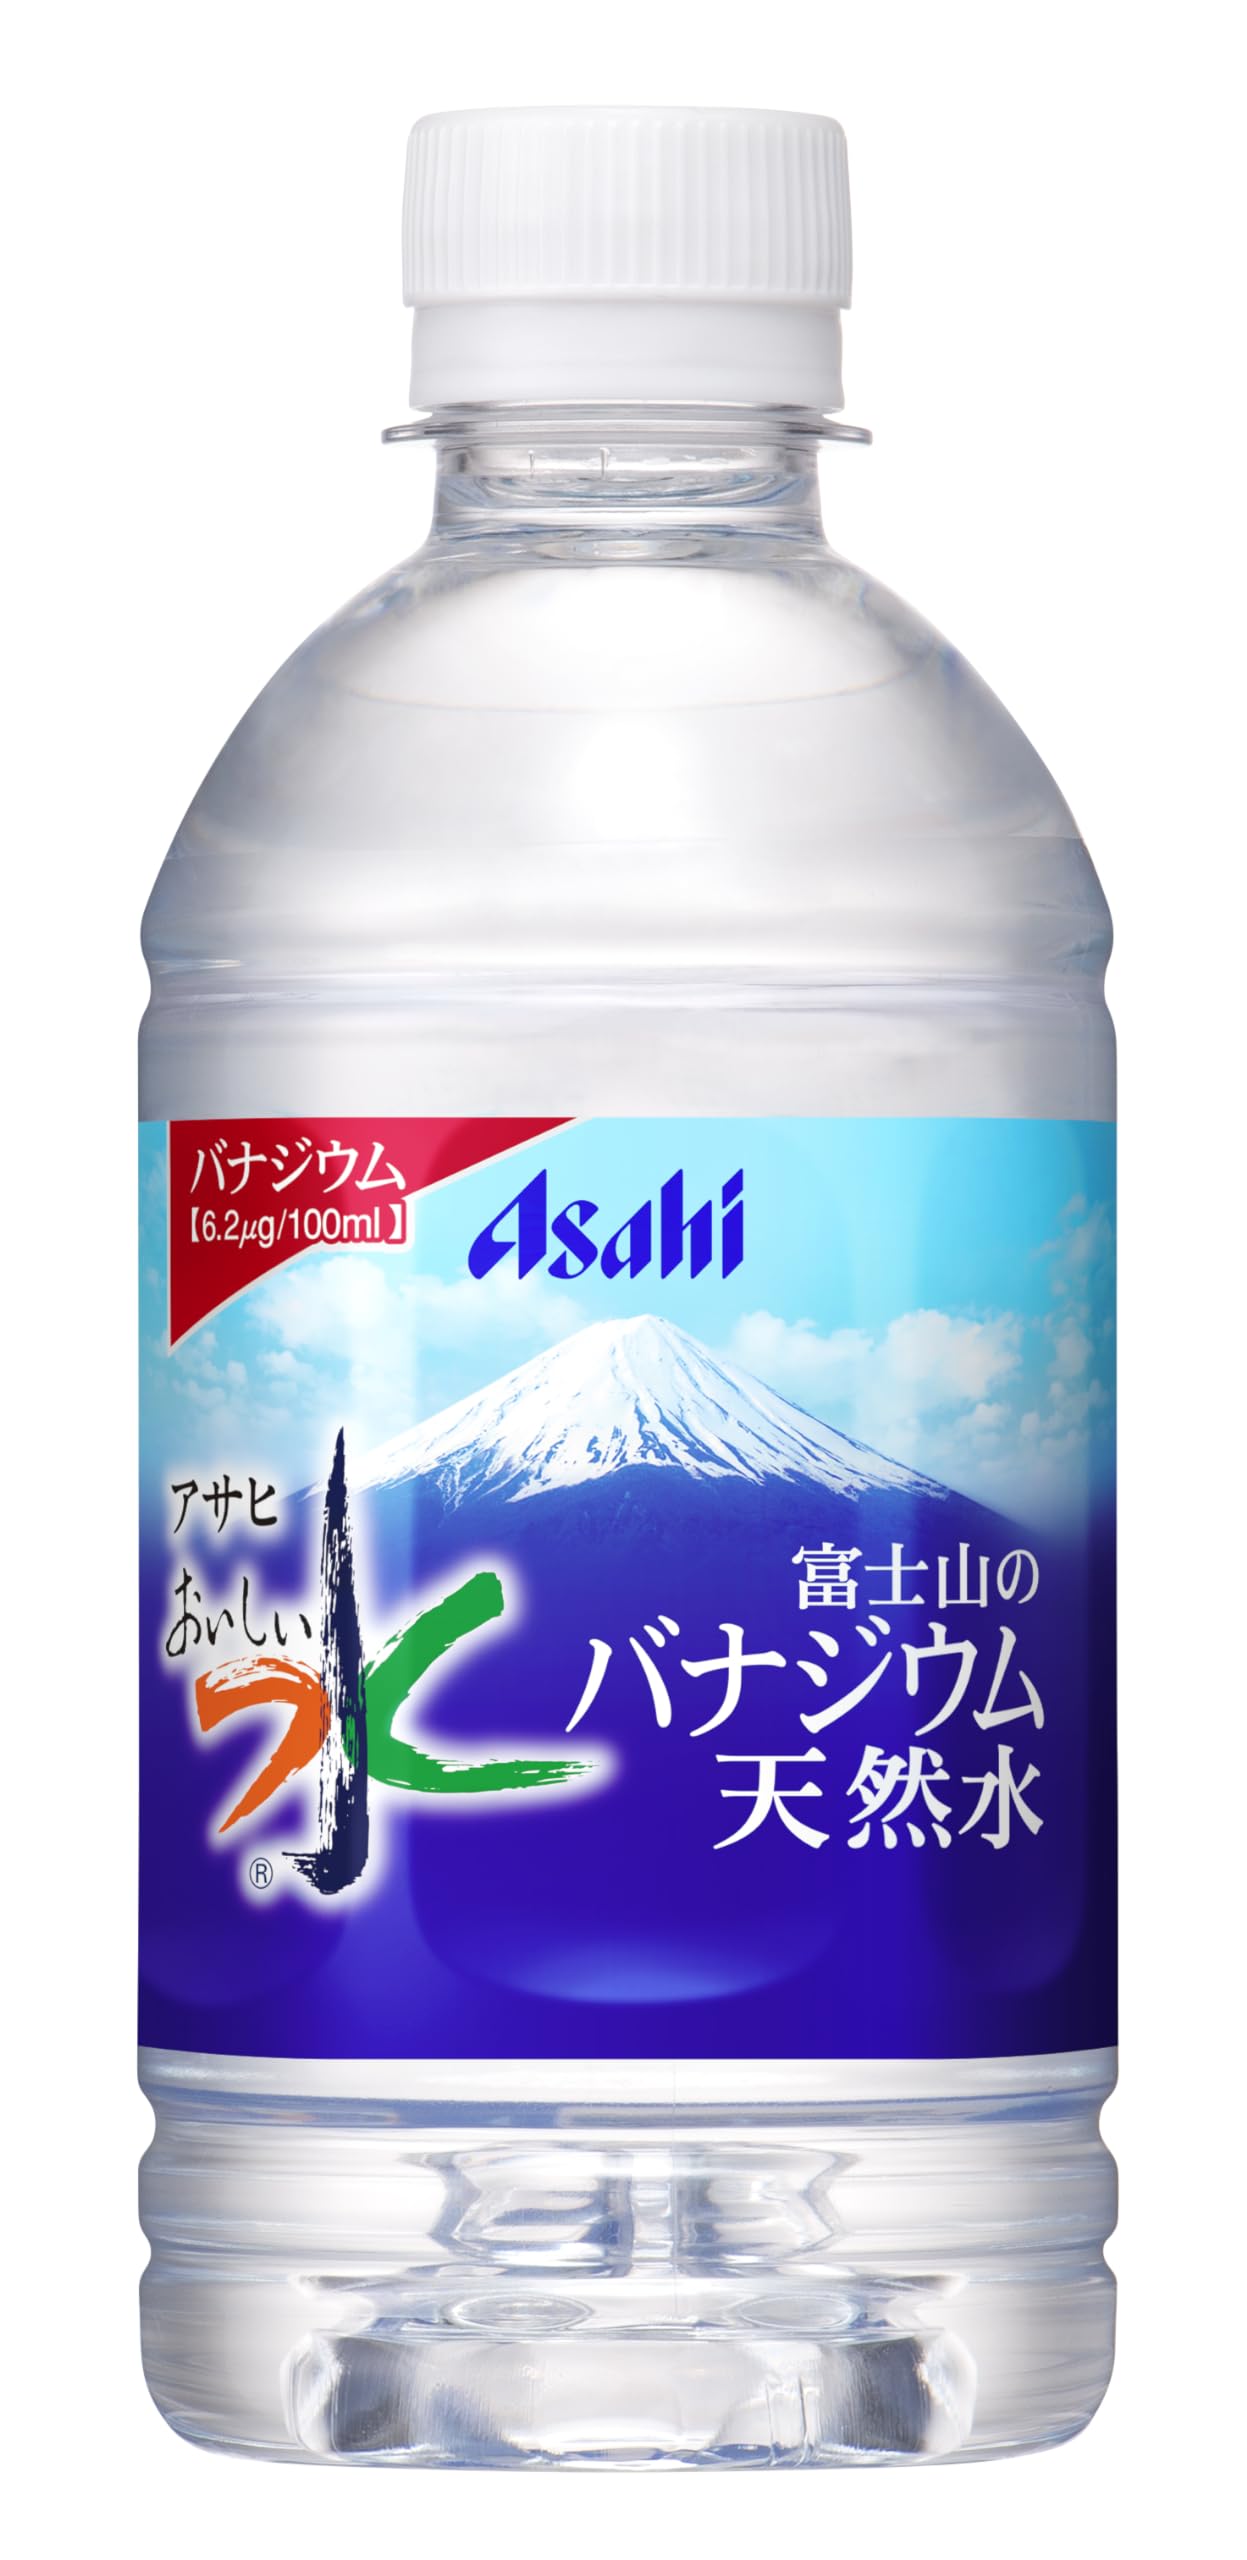 アサヒ飲料 おいしい水 富士山のバナジウム天然水 350ml×24本